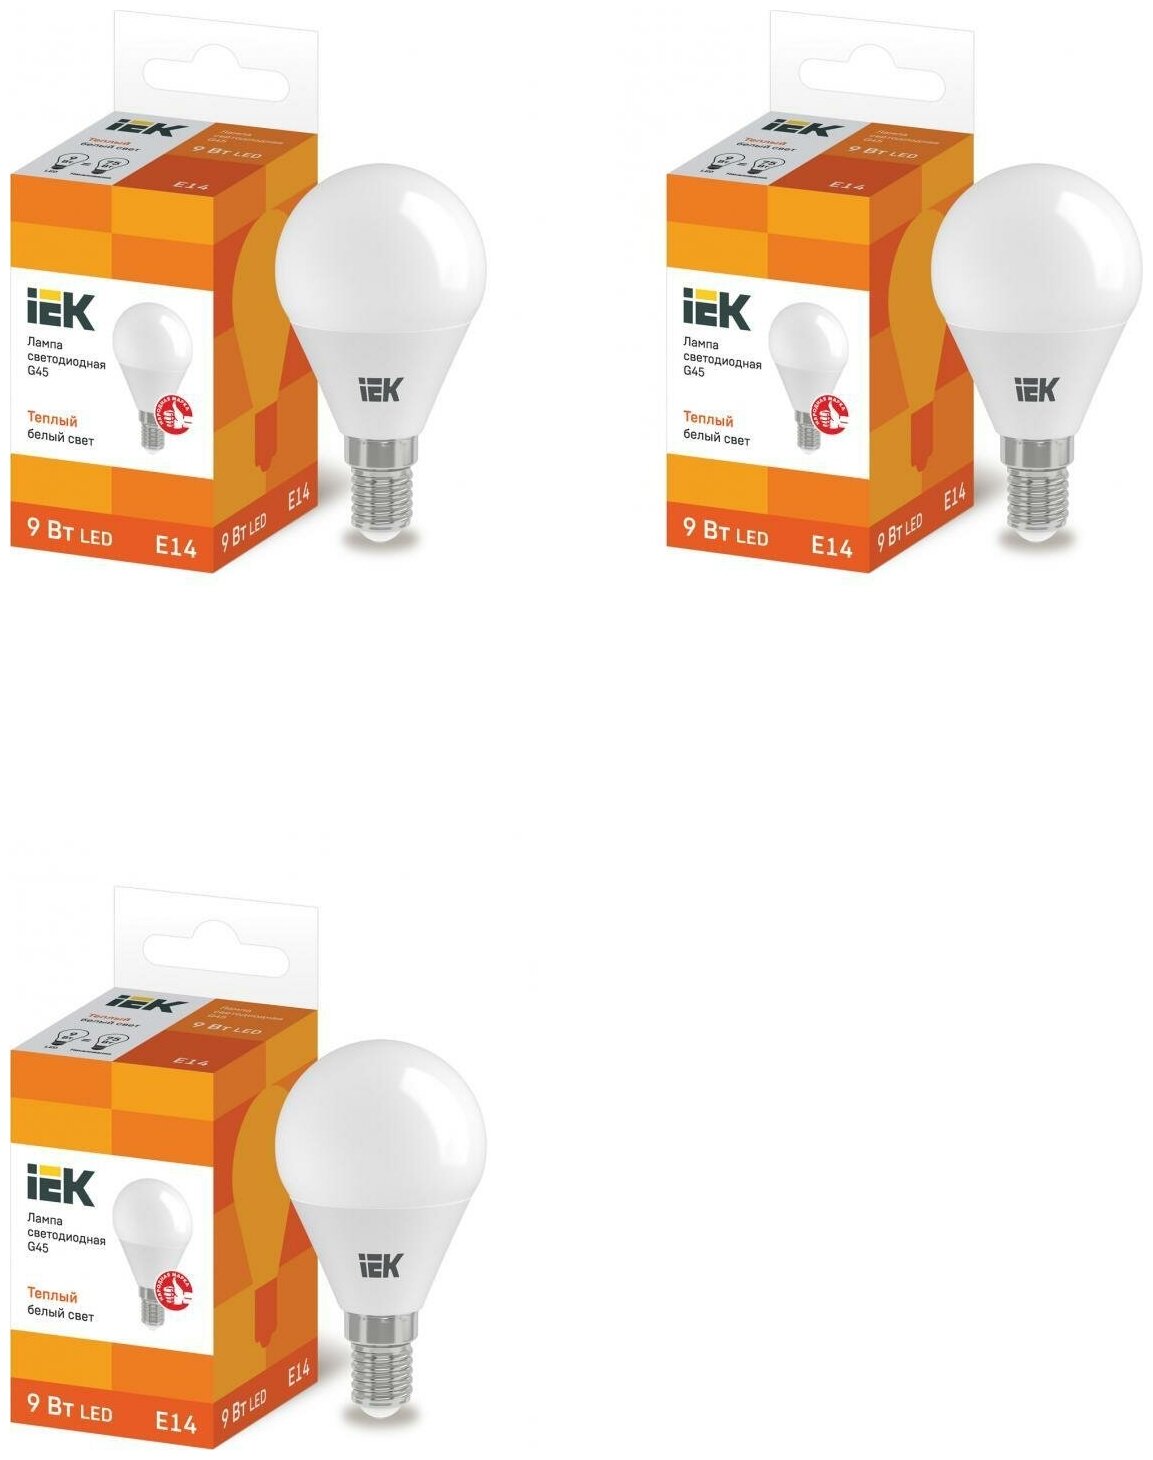 Лампа светодиодная IEK 9 Вт E14 шарообразная 3000 К теплый белый свет 3 шт.